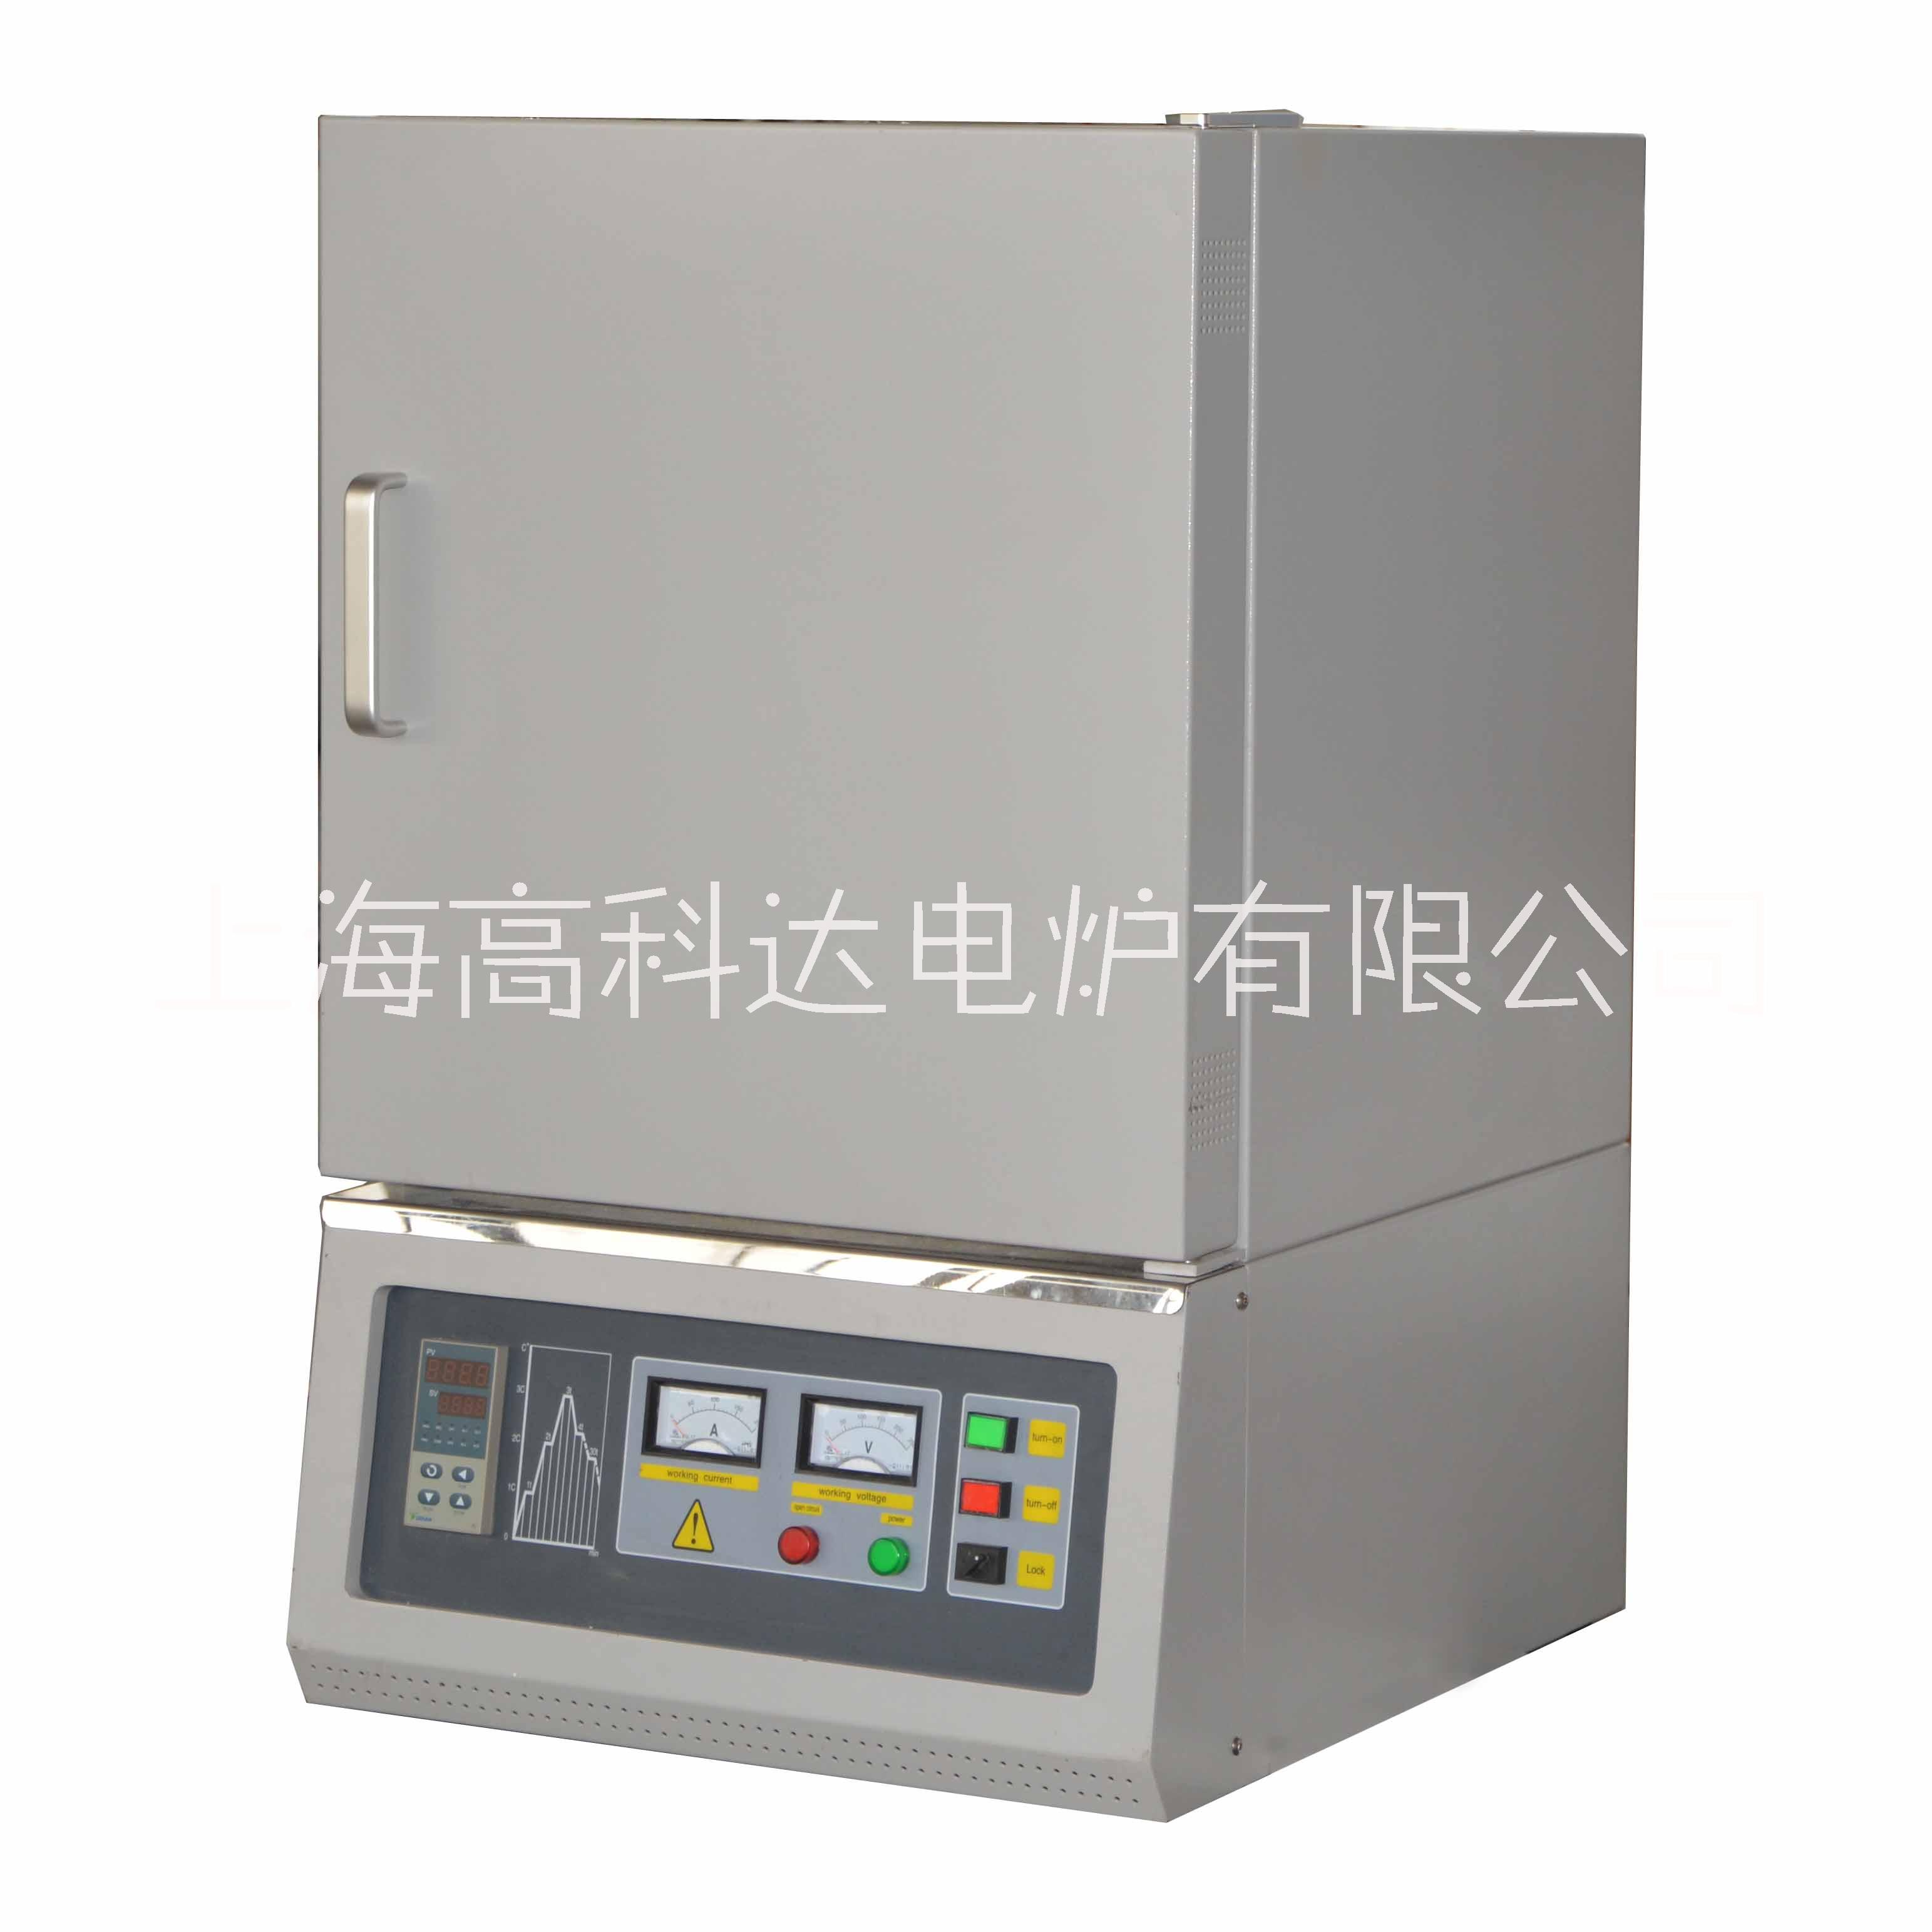 上海厂家马弗炉箱式电阻加热高温炉实验室高温设备研究所使用仪器 箱式马弗炉图片